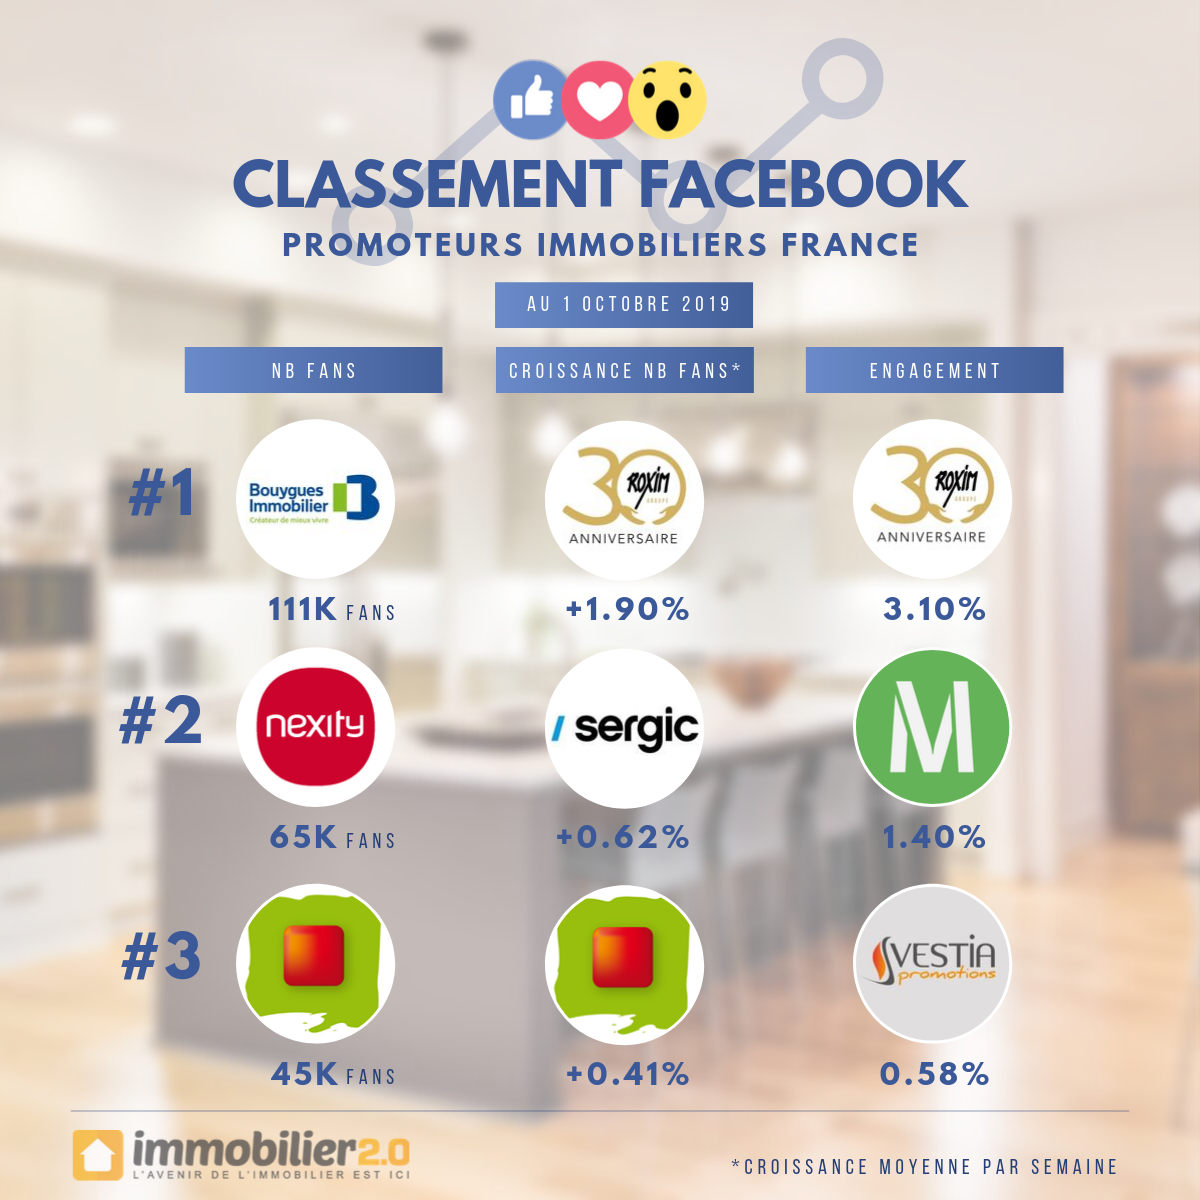 Classement Facebook Promoteurs Immobiliers France Octobre 2019